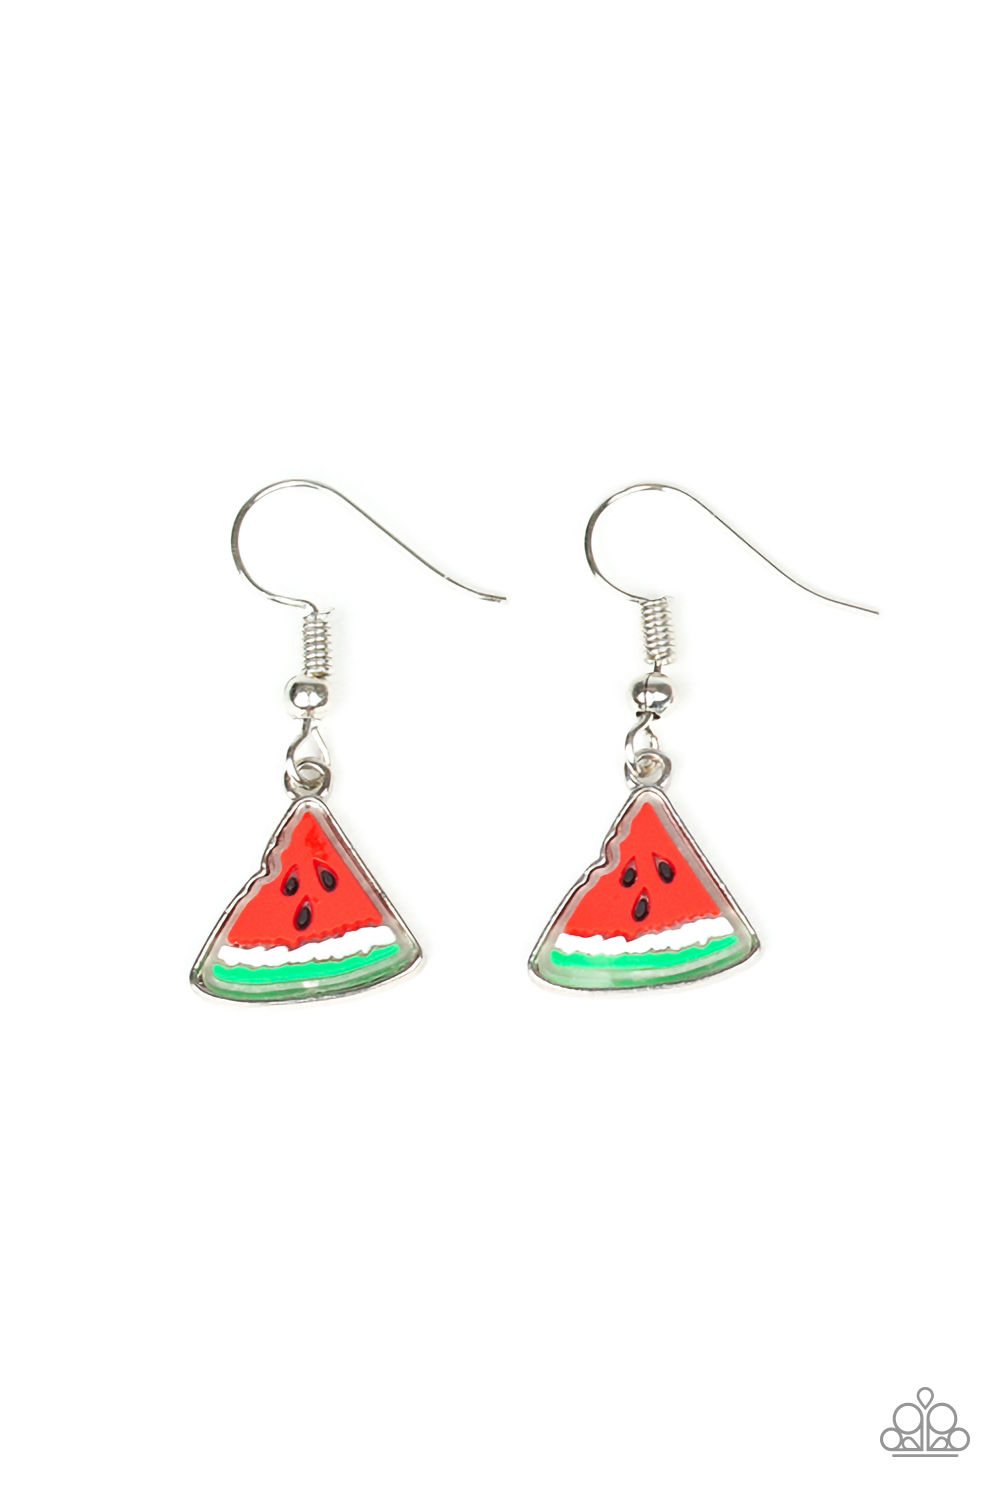 Earring - Starlet Shimmer Textured Fruit - Watermelon